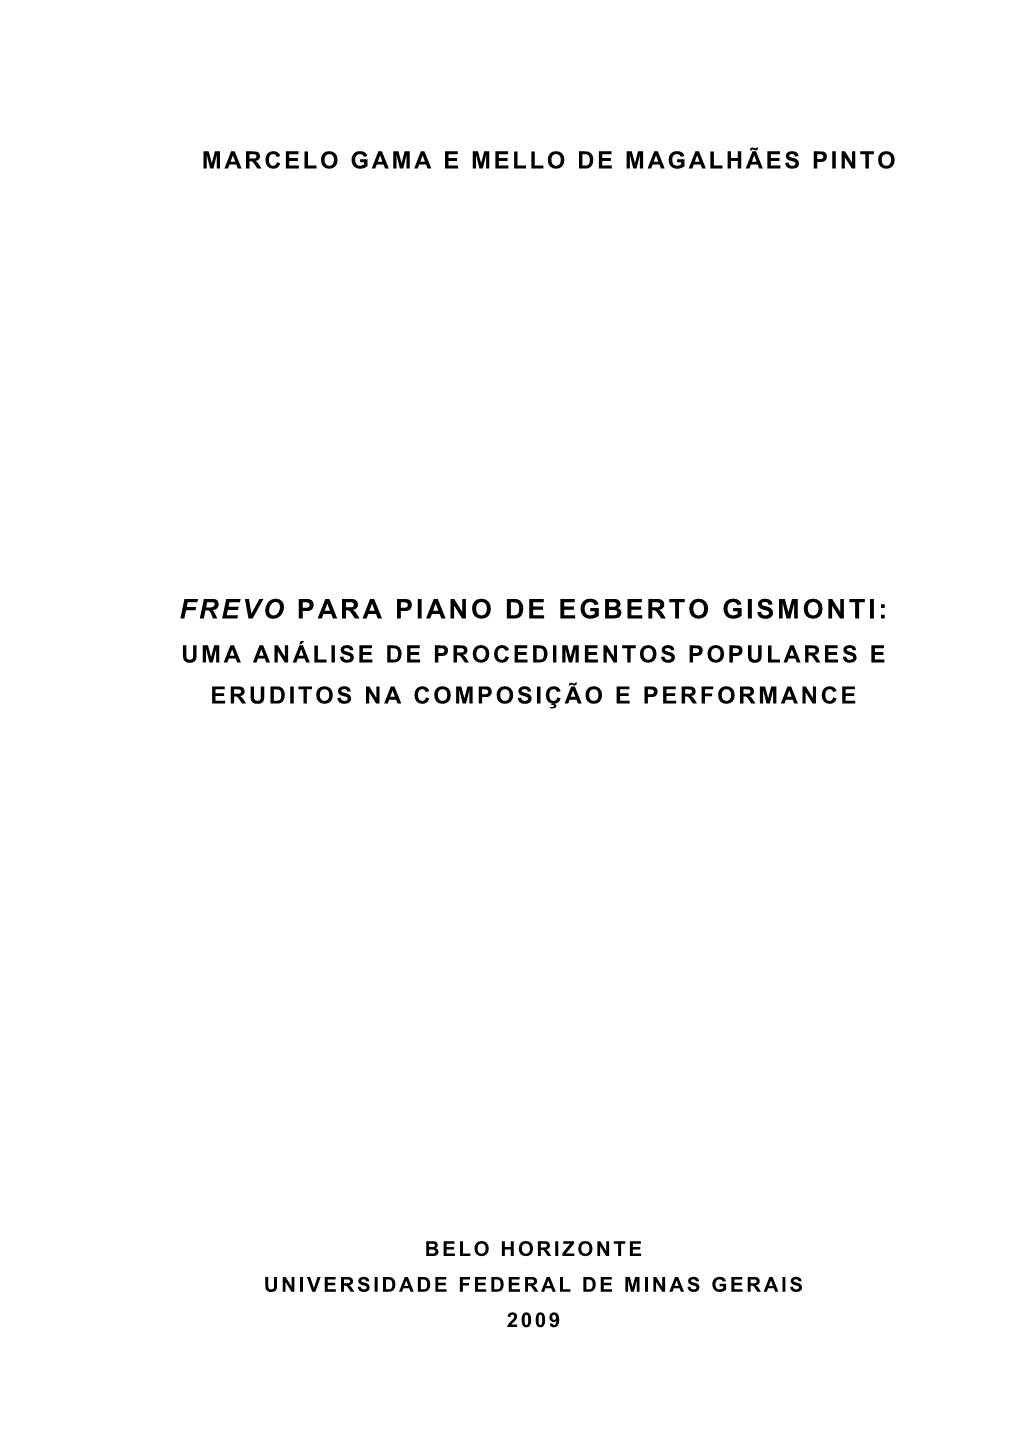 Frevo Para Piano De Egberto Gismonti: Uma Análise De Procedimentos Populares E Eruditos Na Composição E Performance